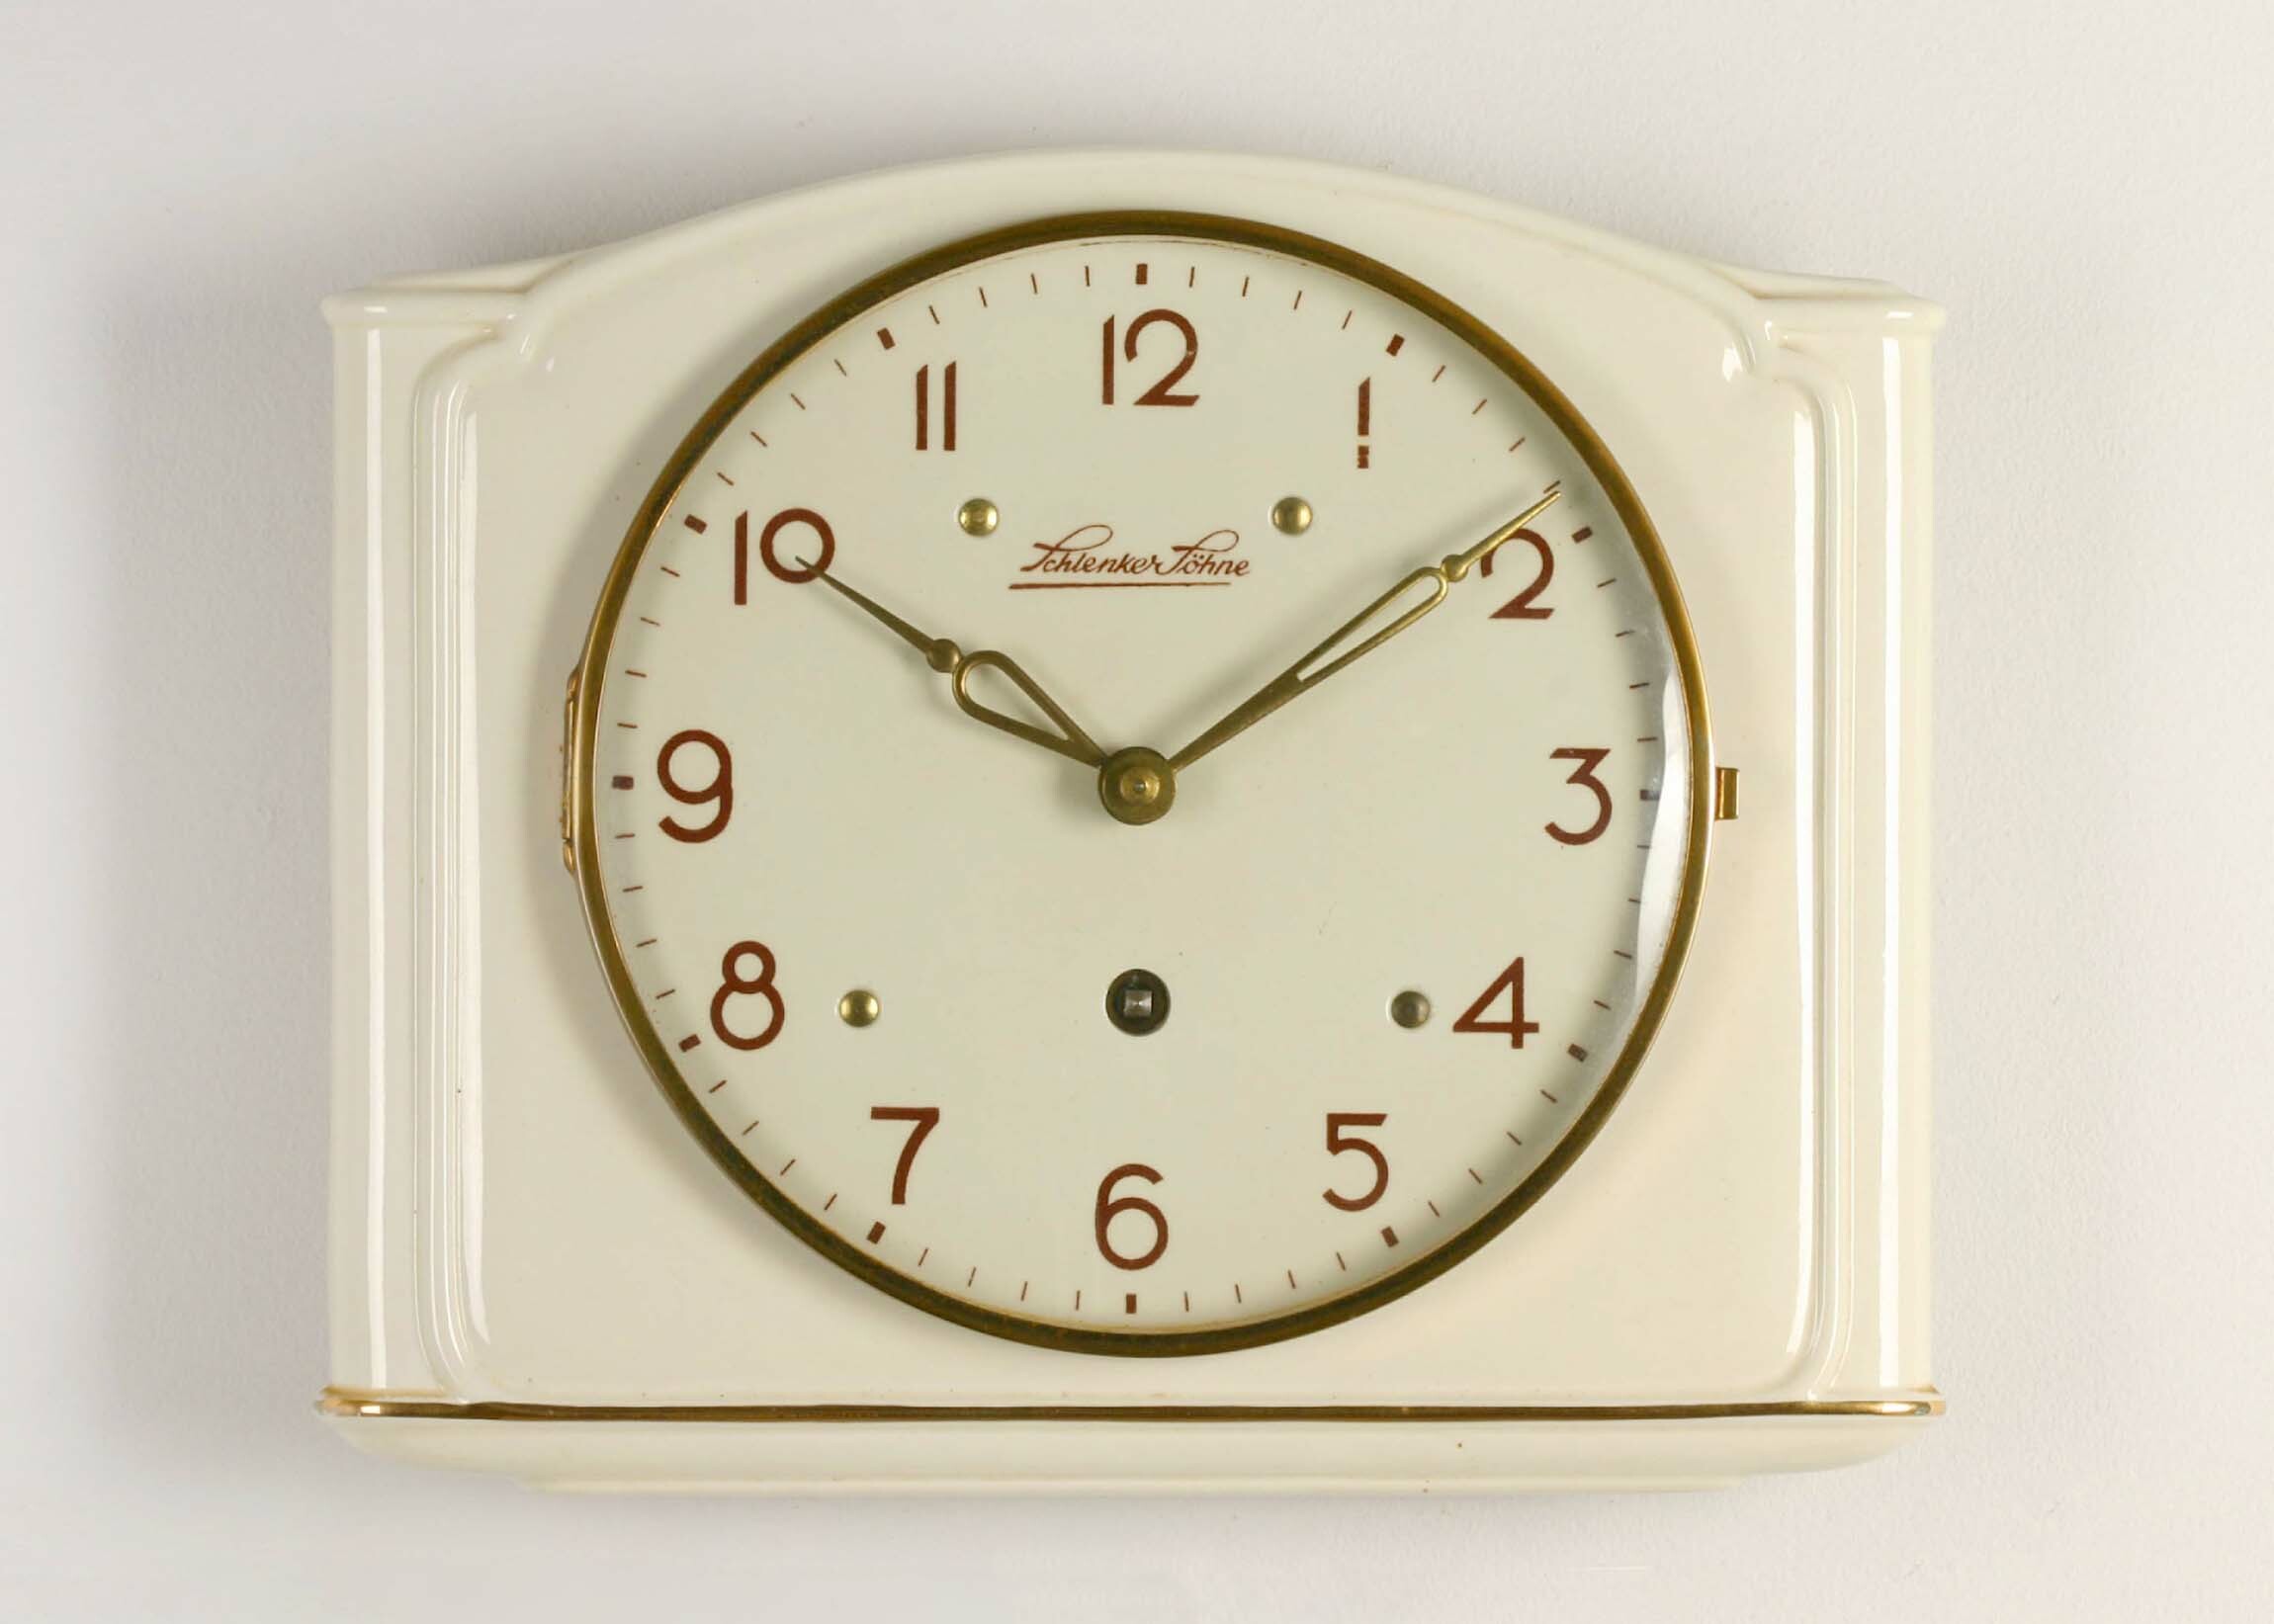 Küchenuhr, Schlenker Söhne, Schwenningen, um 1940 (Deutsches Uhrenmuseum CC BY-SA)